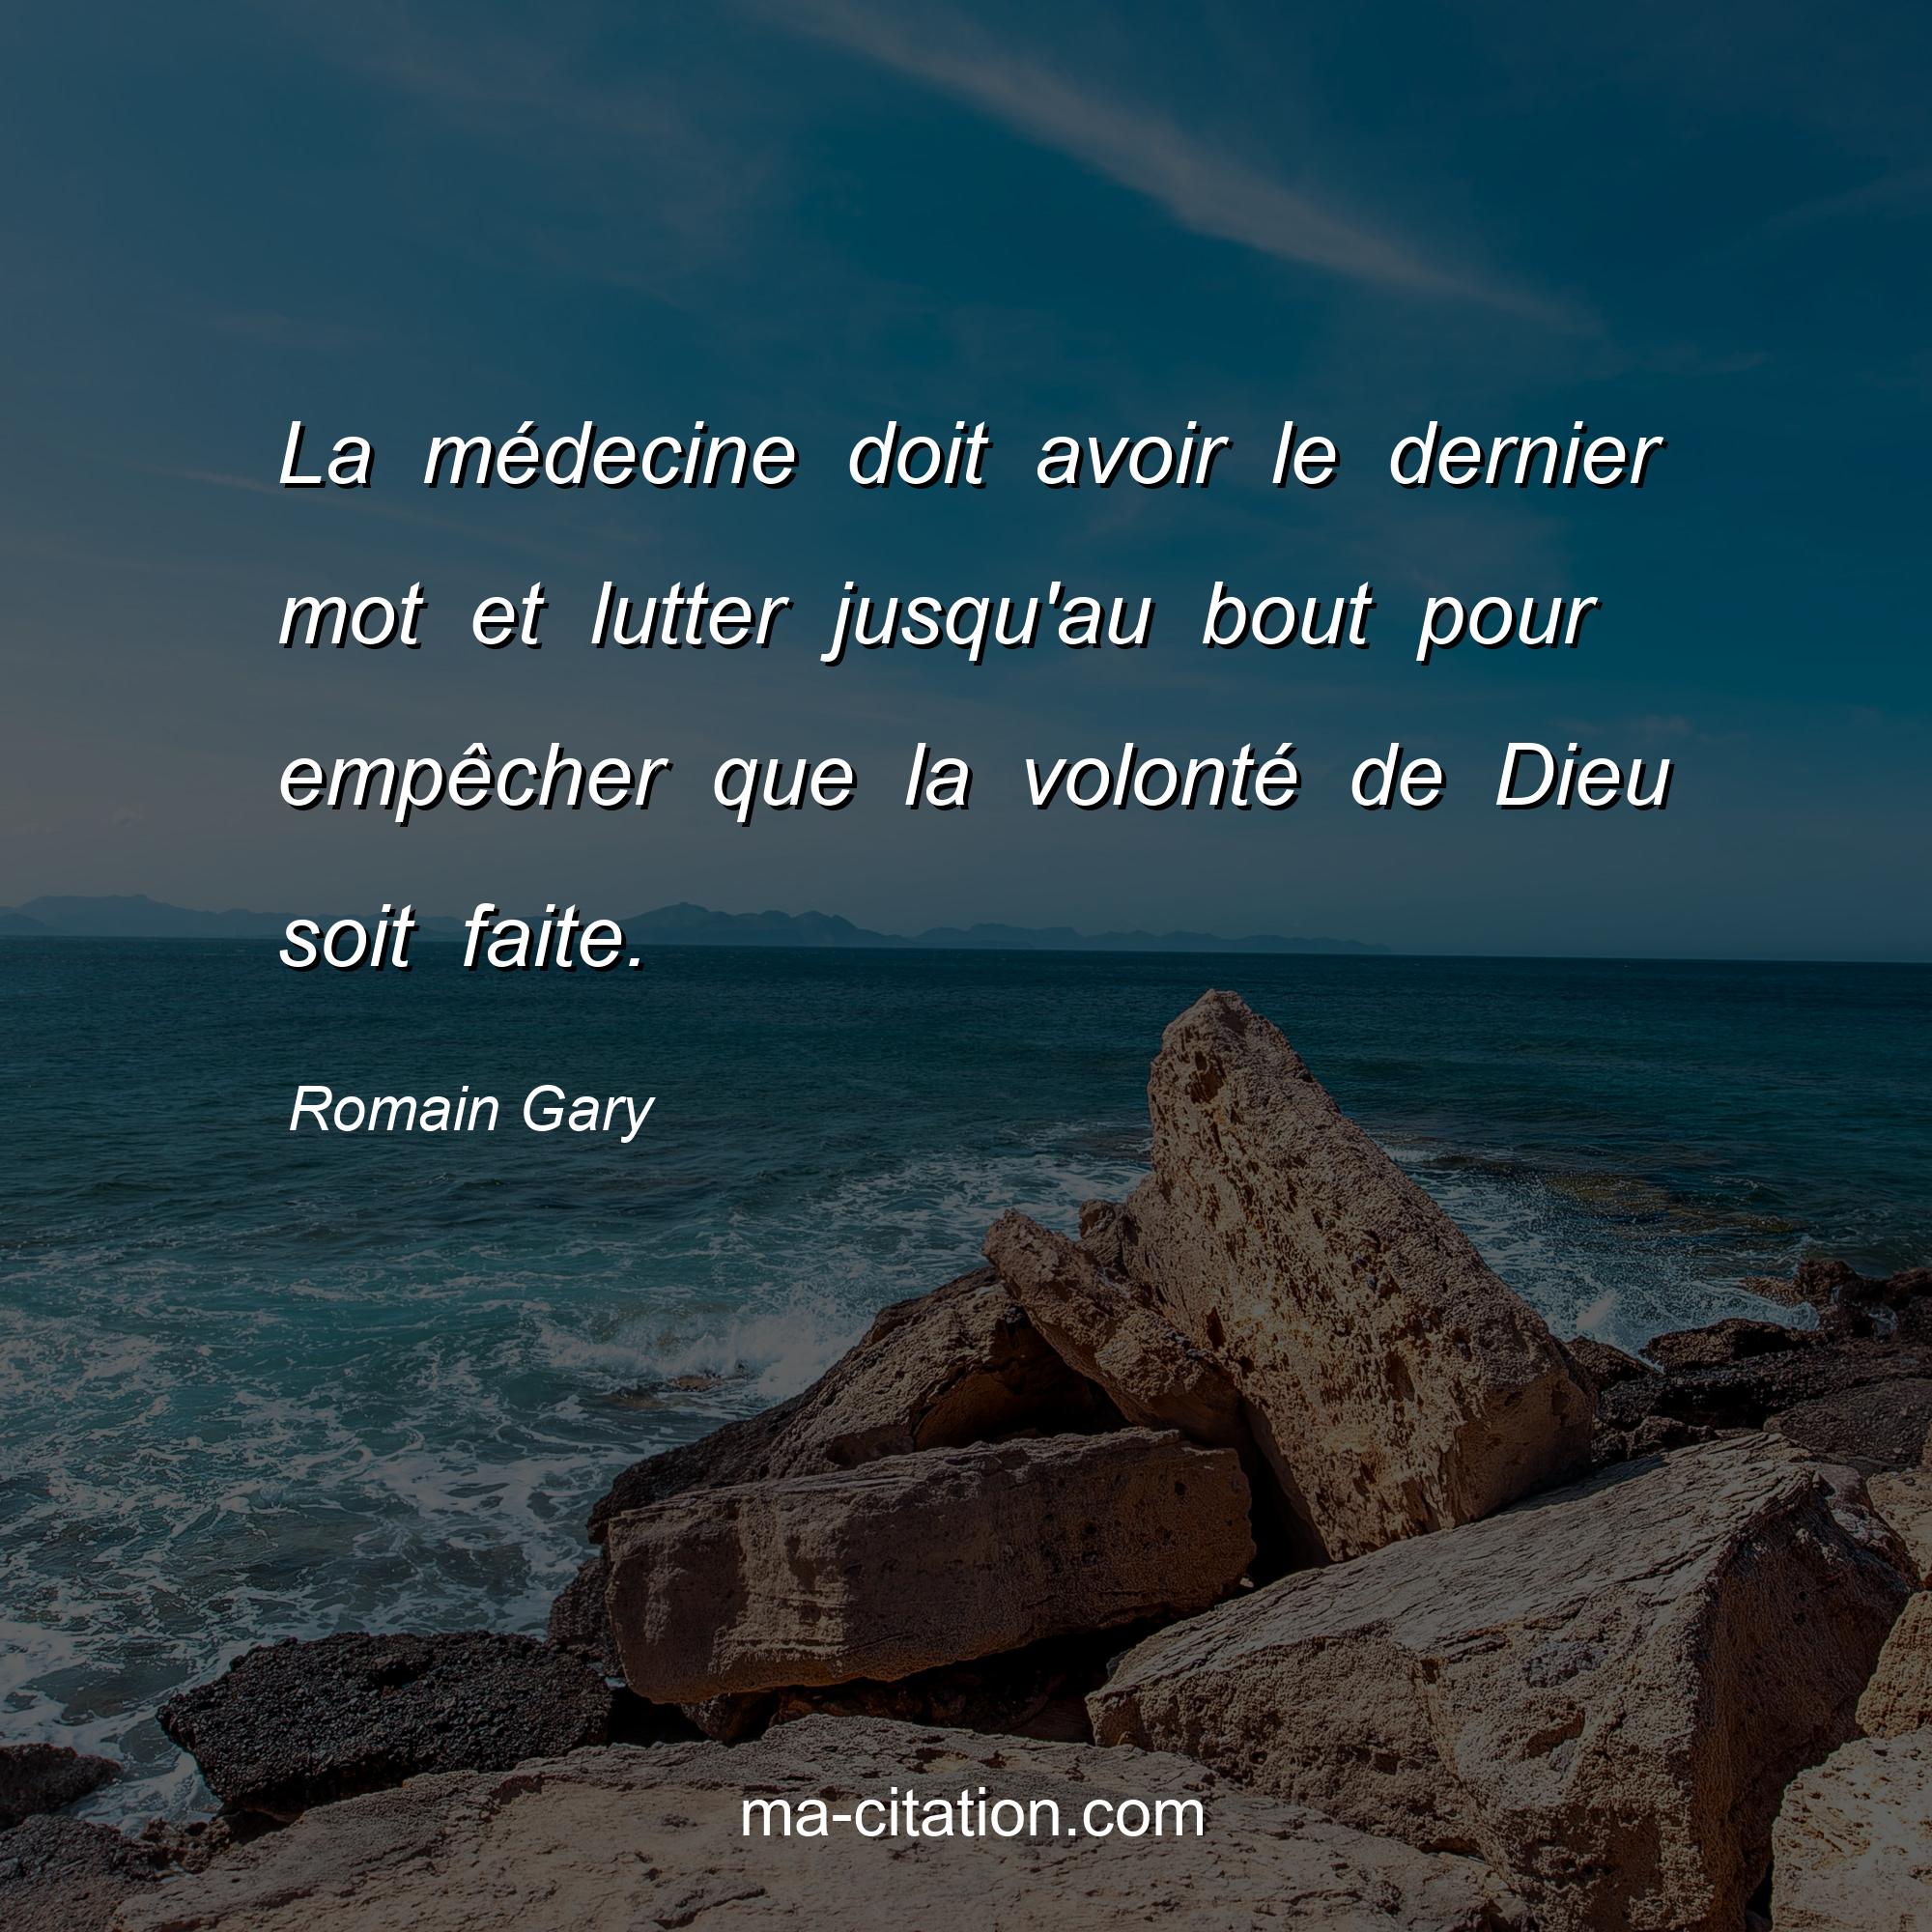 Romain Gary : La médecine doit avoir le dernier mot et lutter jusqu'au bout pour empêcher que la volonté de Dieu soit faite.